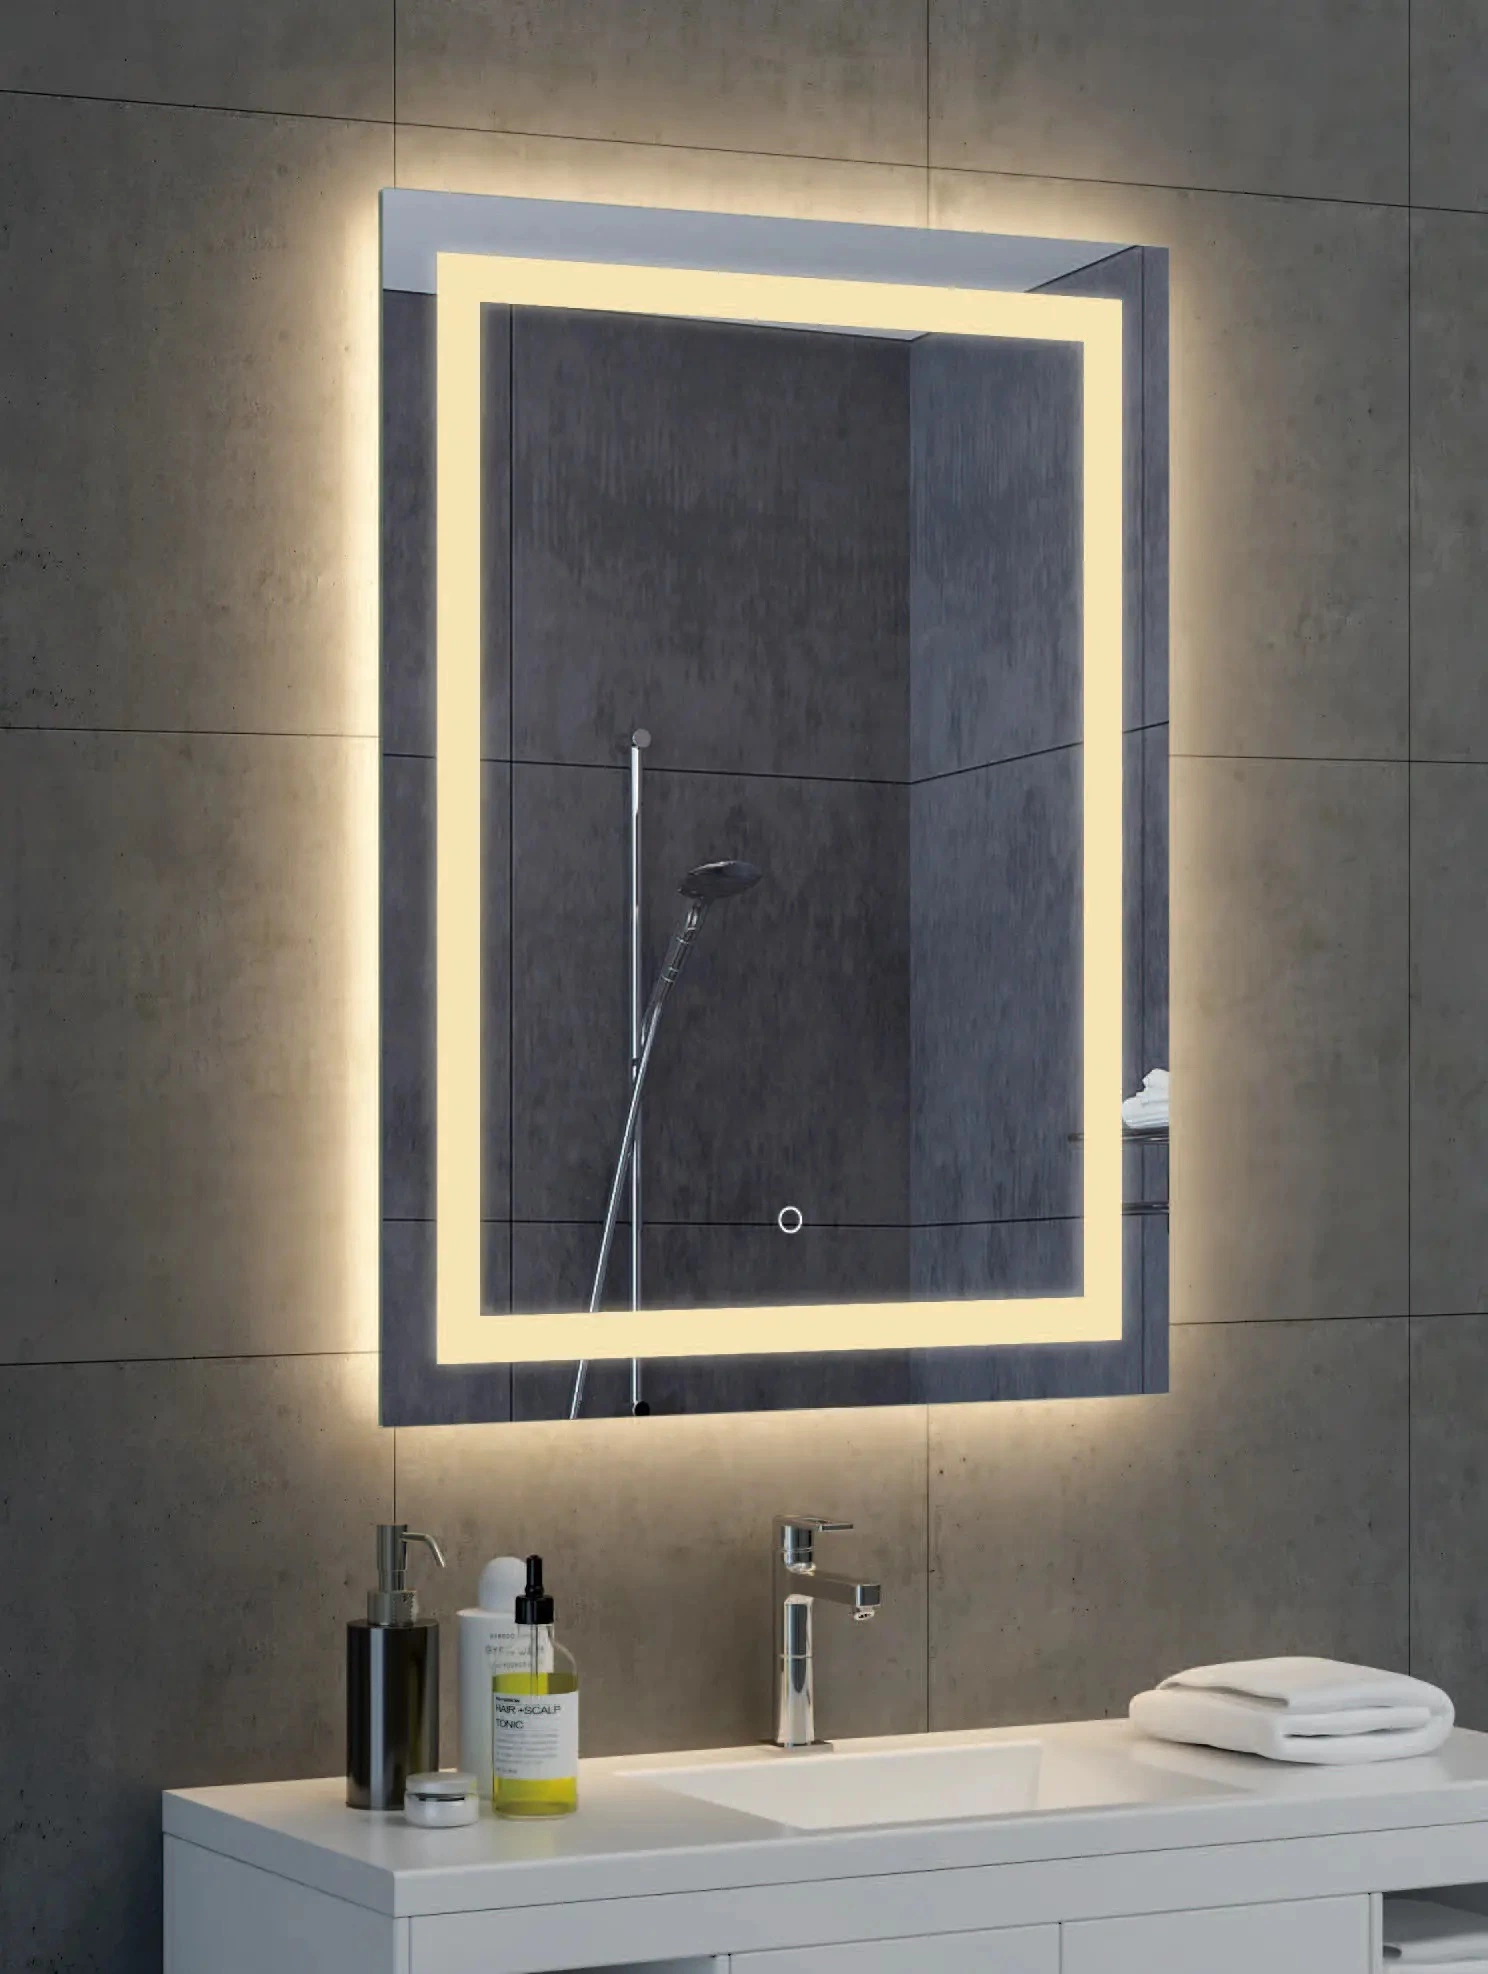 Производитель ванной Ванитная повязка Зеркало Ванна LED-подсветка Smart Lighted Зеркальное безрамное светодиодное зеркало с защитой от влаги